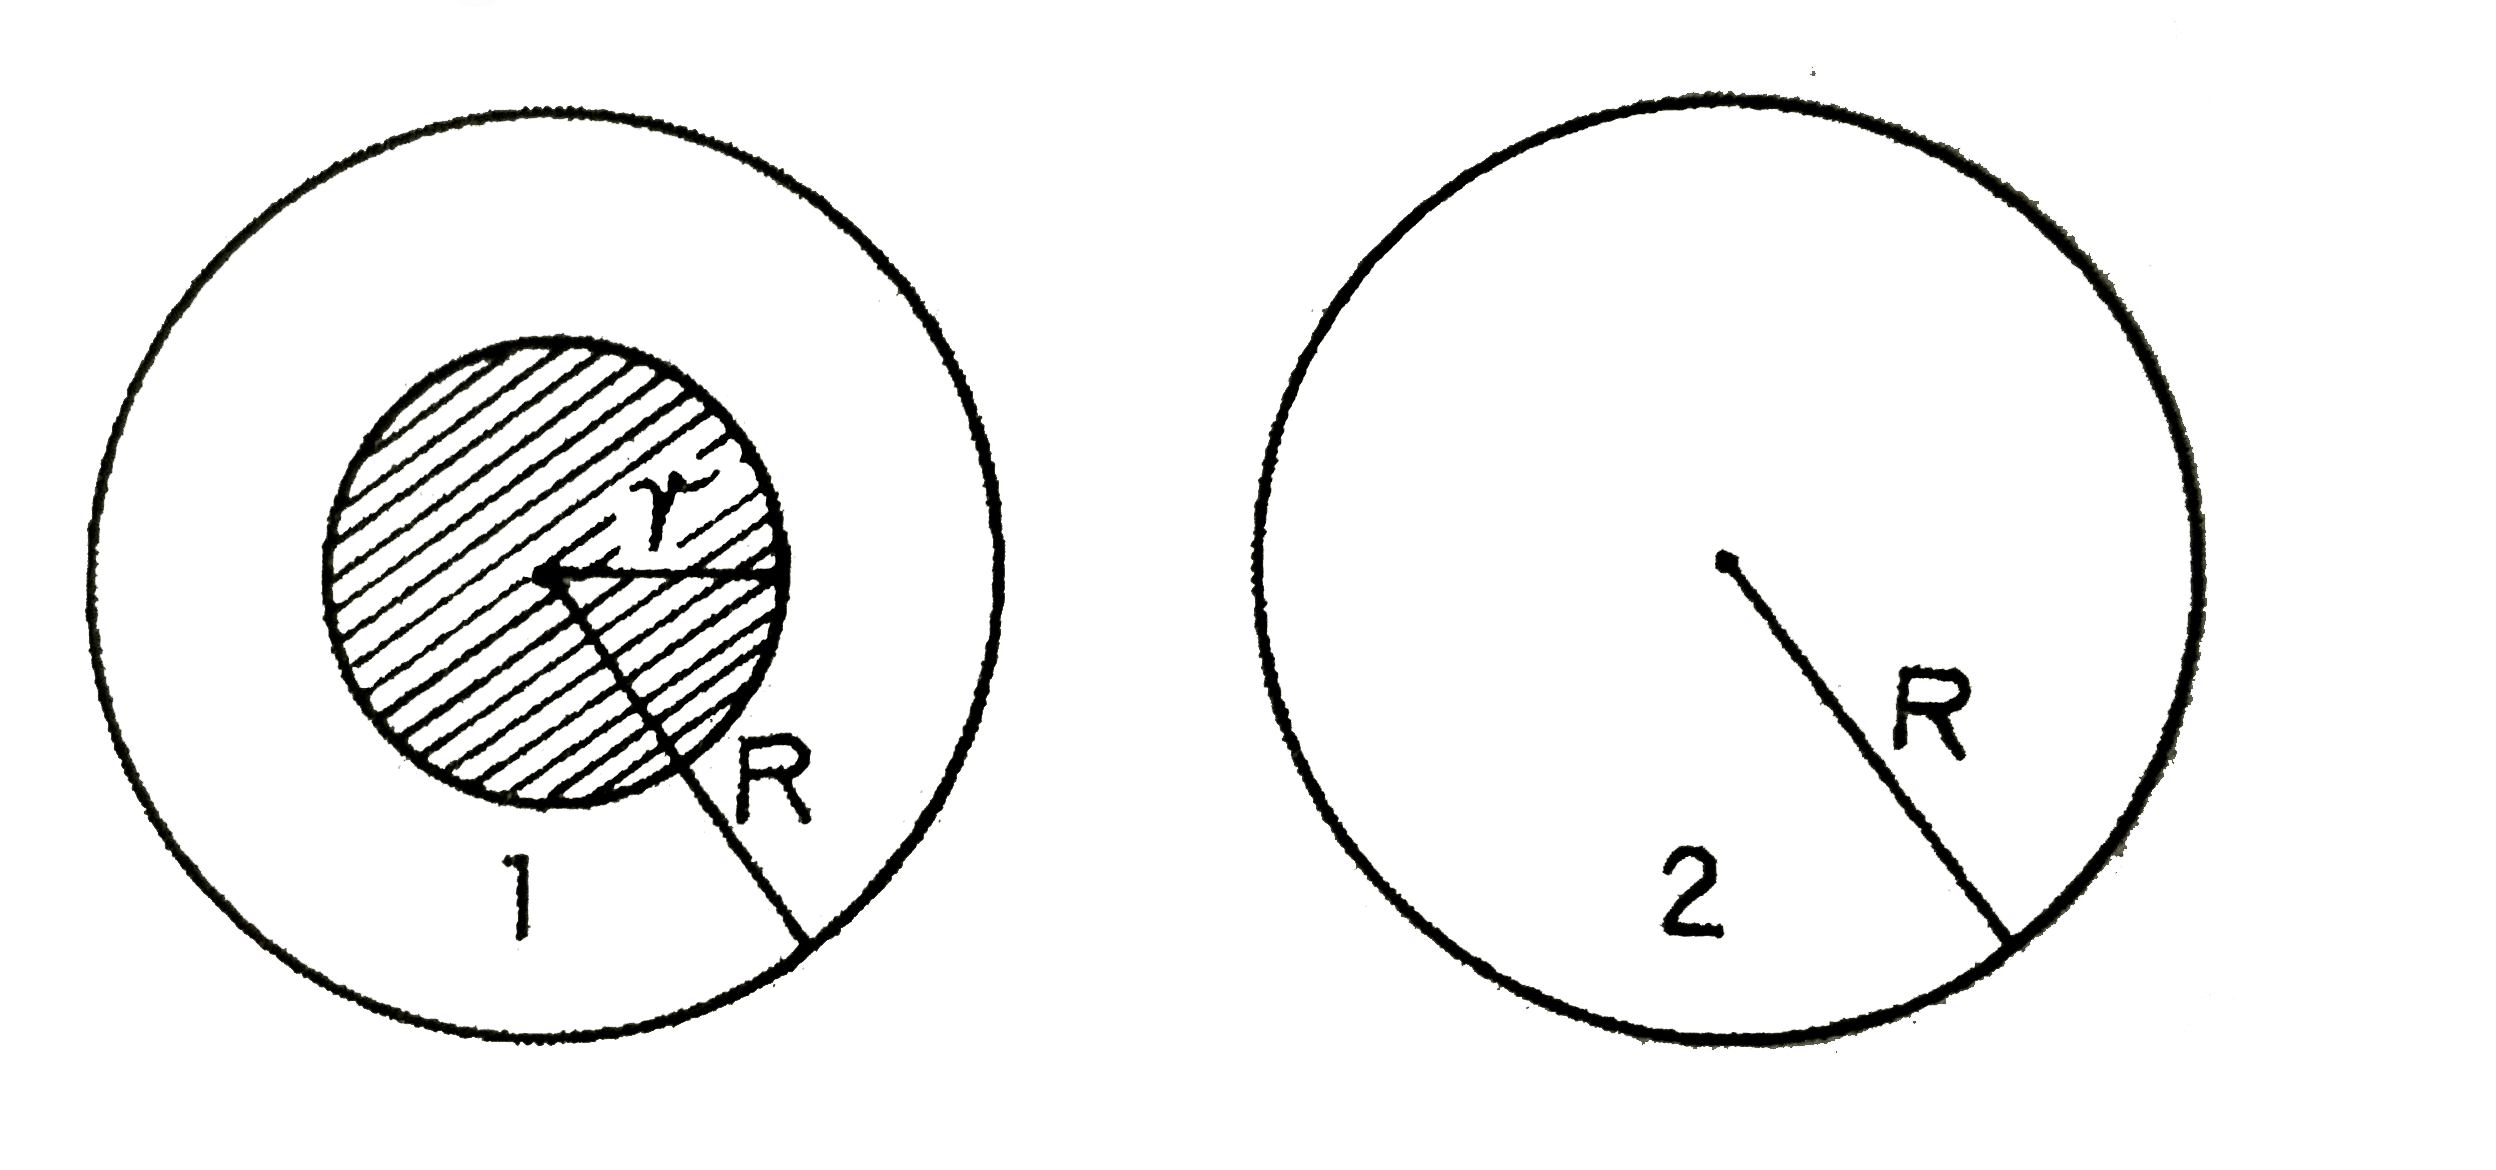 कोई एकसमान चुम्बकीय क्षेत्र r त्रिज्या  के किसी क्षेत्र में सीमित है । यह चुम्बकीय क्षेत्र समय के साथ dvecB//dt की दर से परिवर्तित होता है । संलग्न आरेख के अनुसार, त्रिज्या  R gt r का लूप-1, r क्षेत्र को परिबद्ध करता है, तथा R त्रिज्या का लूप - 2, चुम्बकीय क्षेत्र की सीमा के बाहर  है । उत्पन्न विo वाo बल का मान होगा :